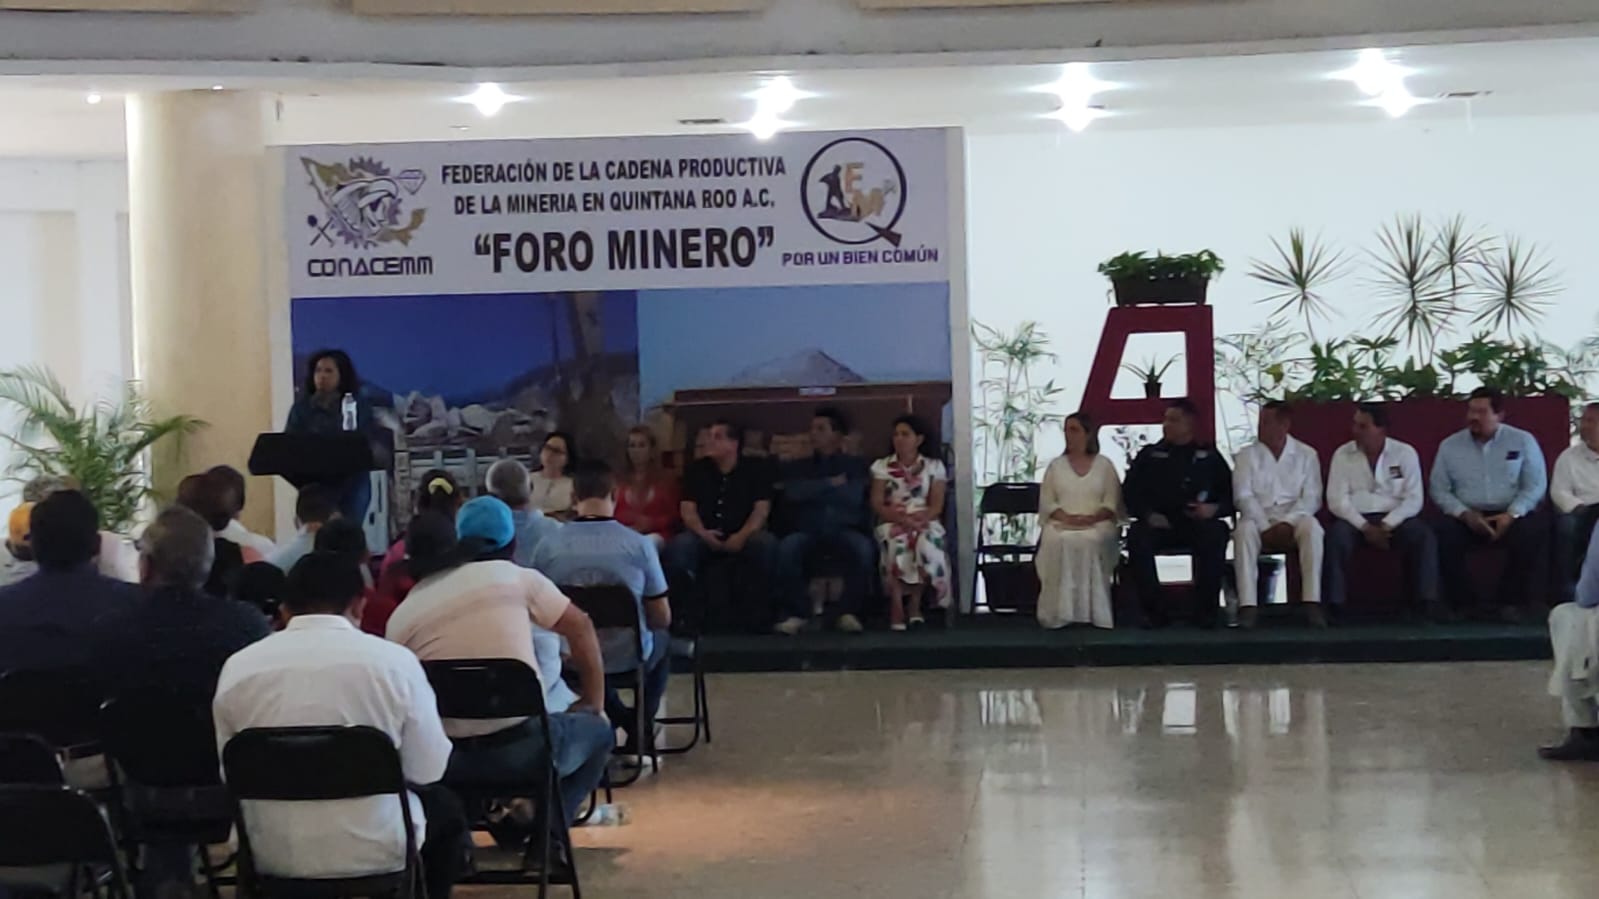 La minería diversificará la economía de Quintana Roo: Conacemm